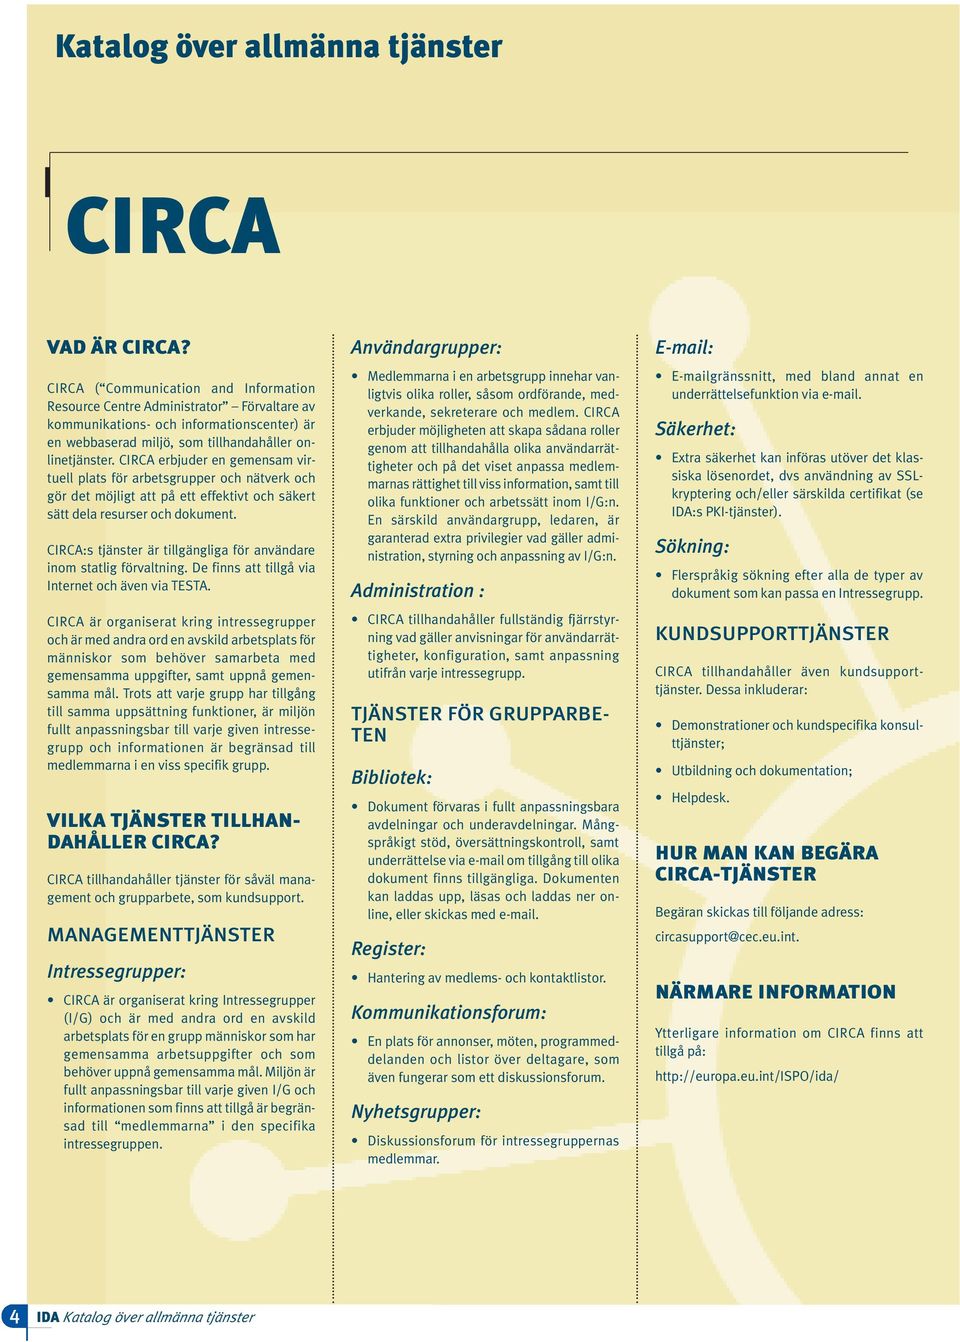 CIRCA erbjuder en gemensam virtuell plats för arbetsgrupper och nätverk och gör det möjligt att på ett effektivt och säkert sätt dela resurser och dokument.